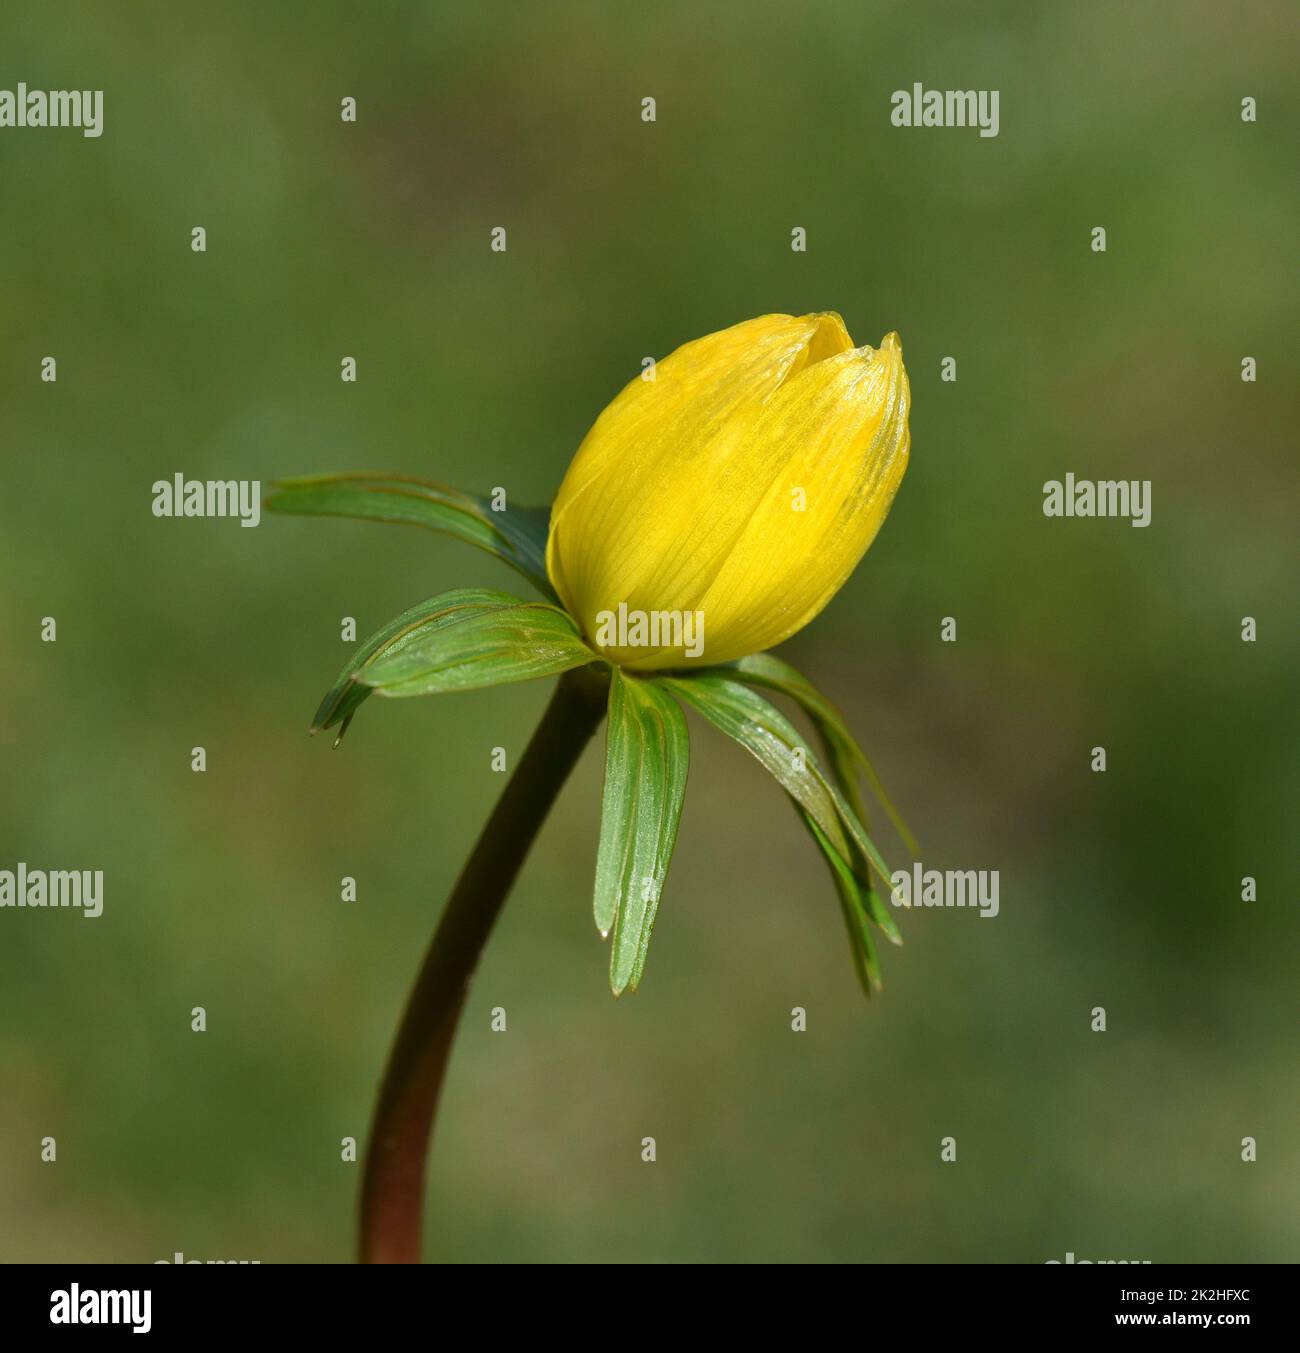 Winterling, Eranthis hyemalis, ist eine Blume die im Winter Blueht und gelbe Blueten besitzt. Winterling, Eranthis hyemalis, è un fiore che fiorisce i Foto Stock